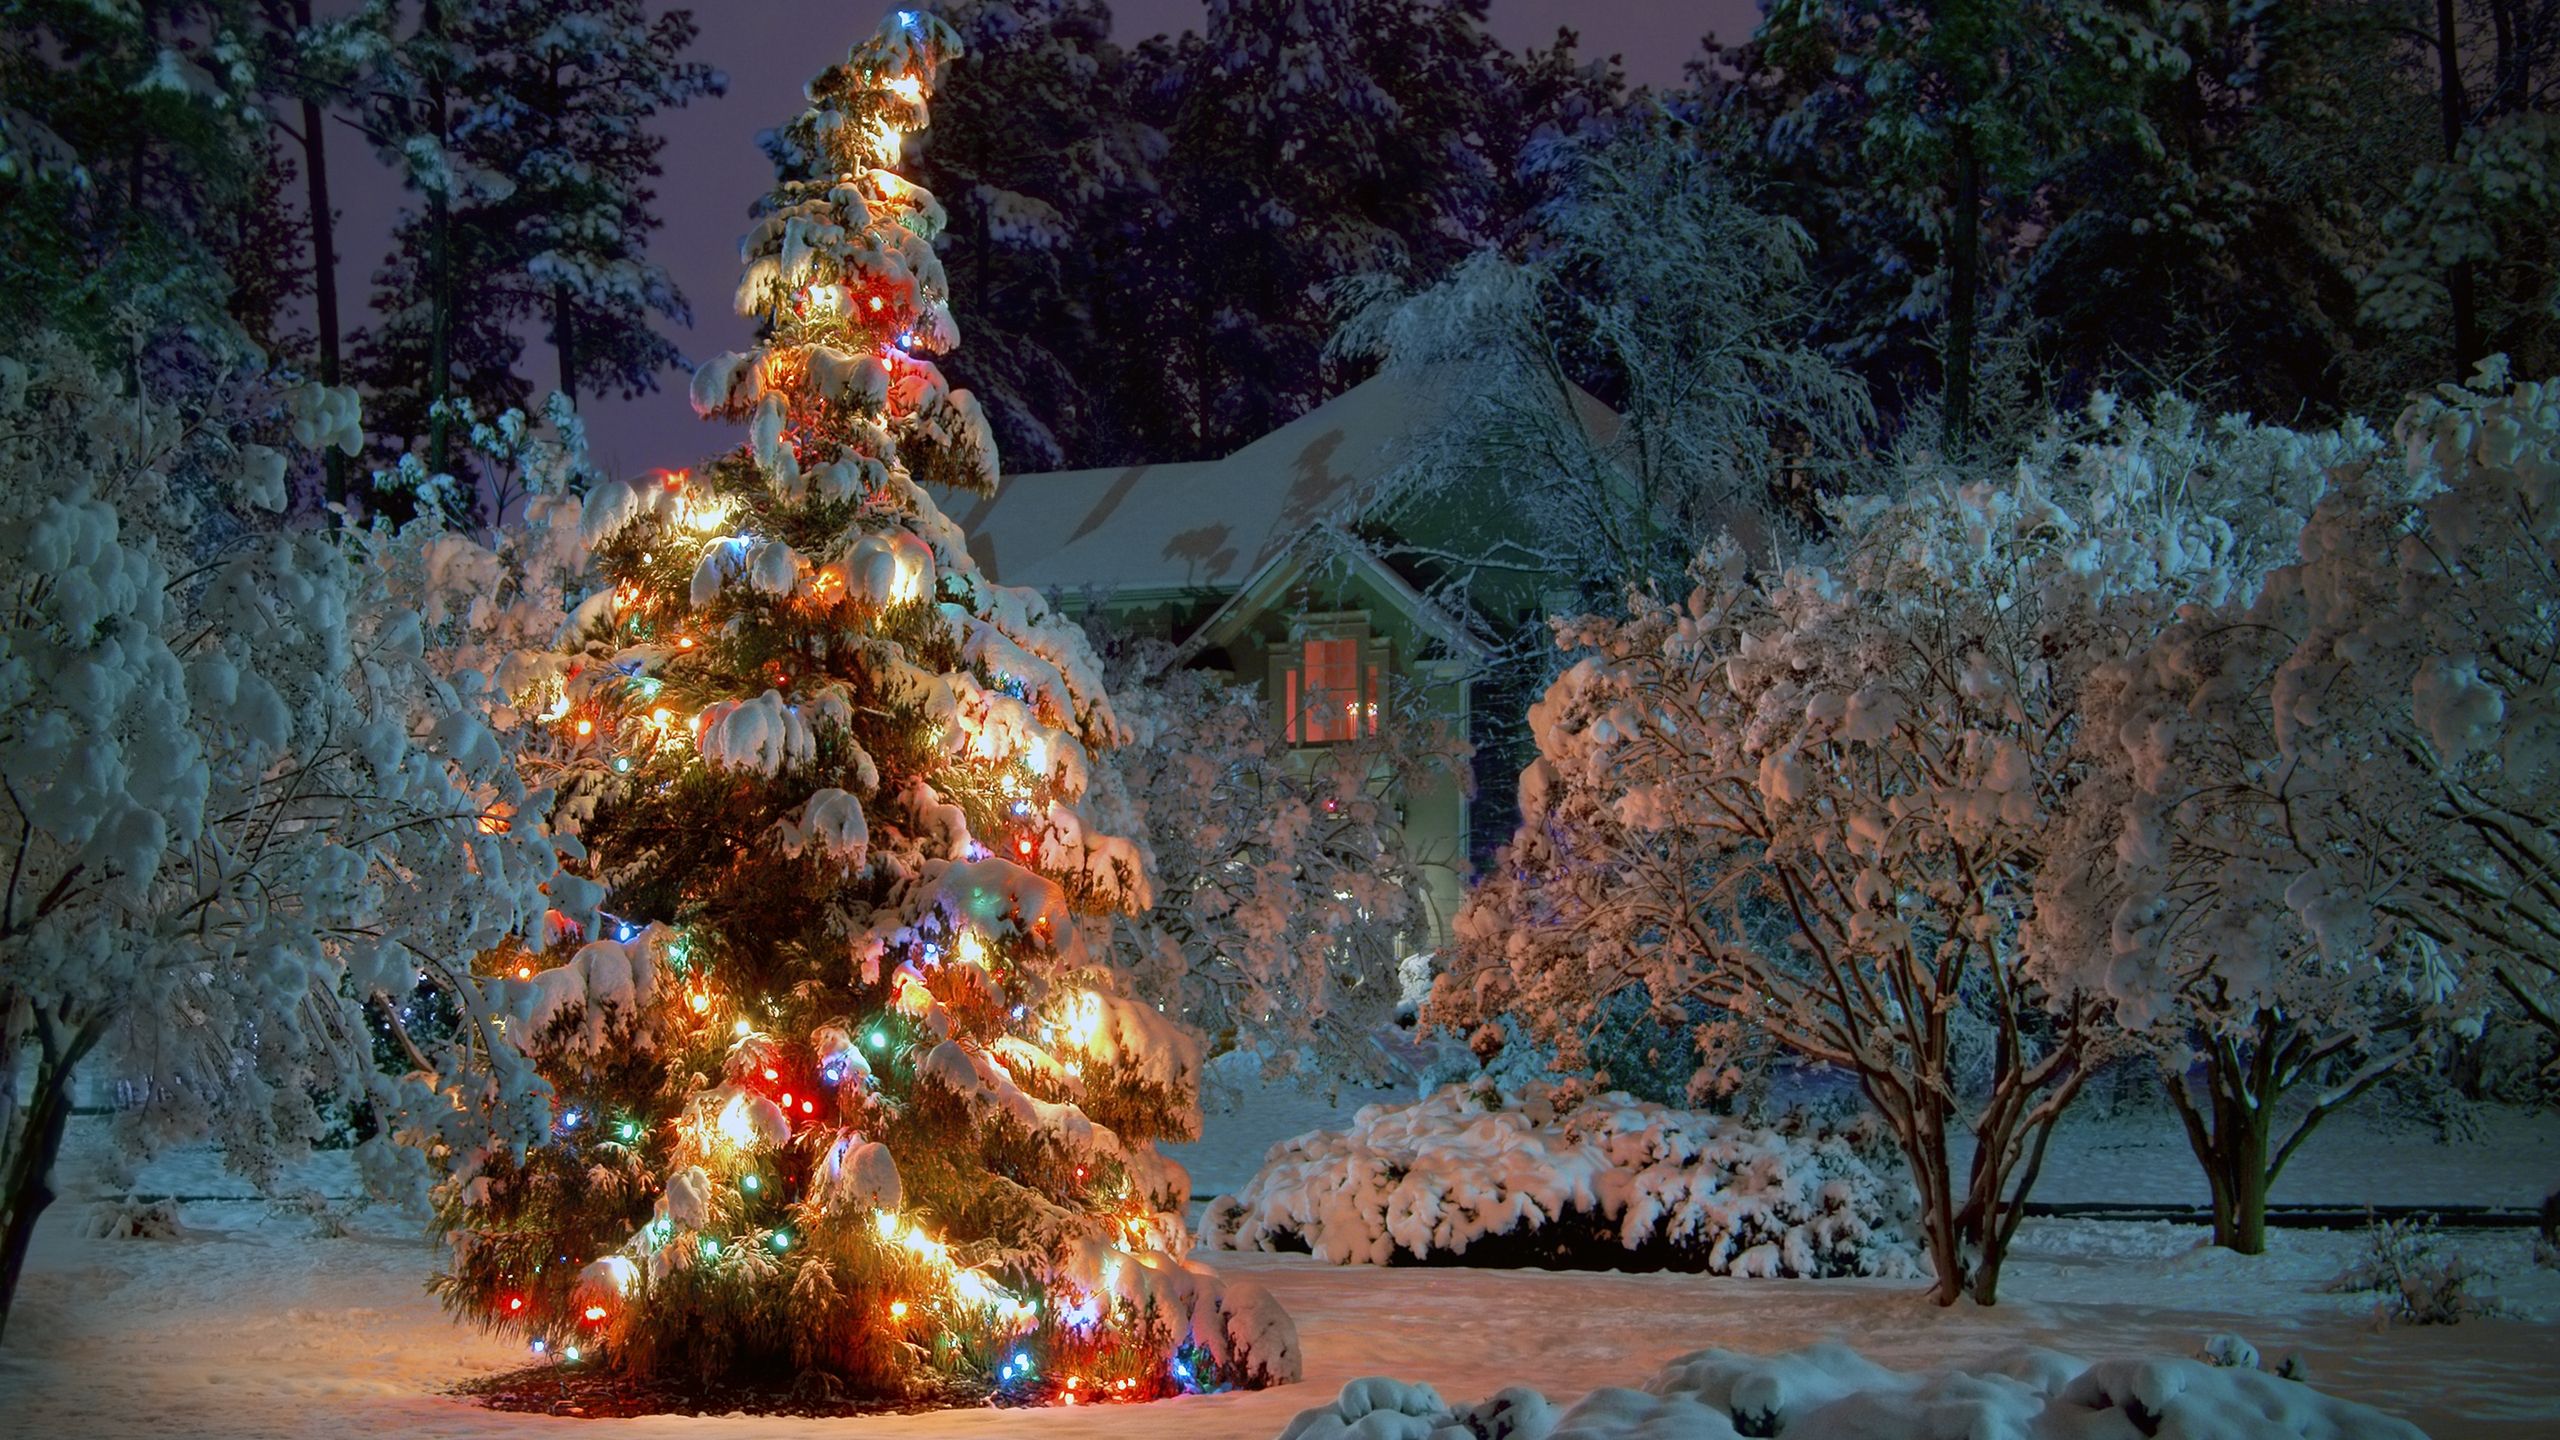 Giáng sinh đêm: Đêm Giáng sinh là khoảnh khắc long lanh nhất trong năm. Đi dạo dưới những hàng cây đèn Noel rực rỡ, ngắm nhìn ánh sao lung linh trên trời và thưởng thức không khí ấm áp của gia đình và bạn bè sẽ là một trải nghiệm tuyệt vời. Hãy xem hình ảnh Giáng sinh đêm để thấy được vẻ đẹp đó.